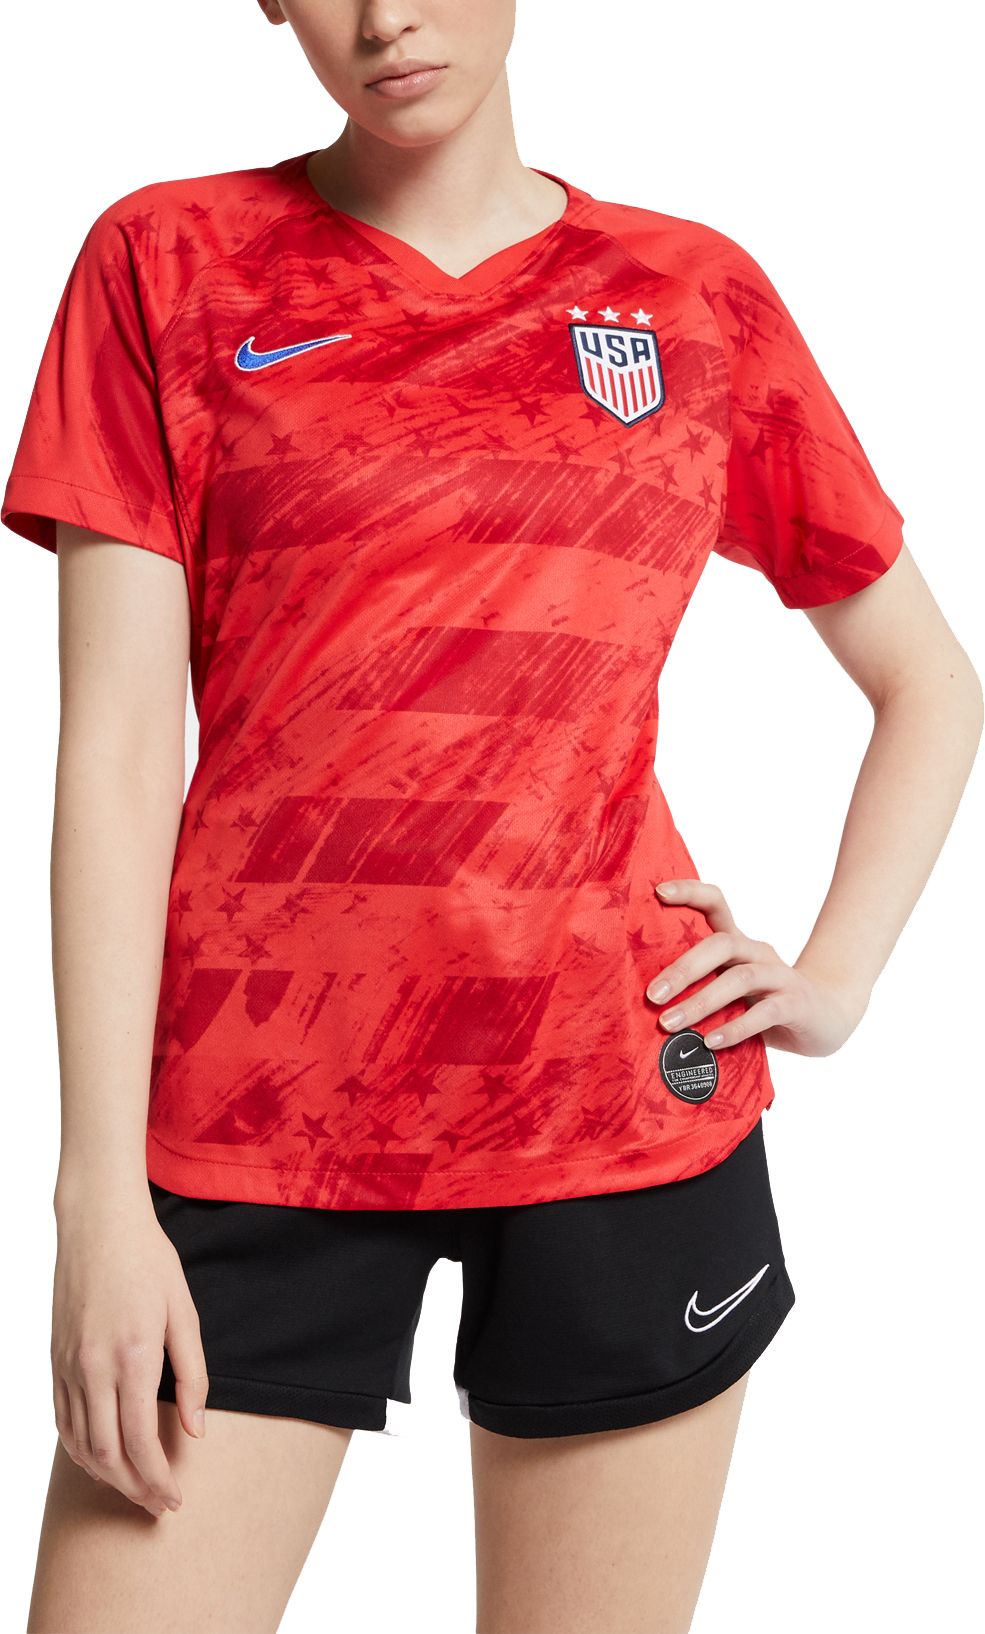 usa women's world cup soccer jersey